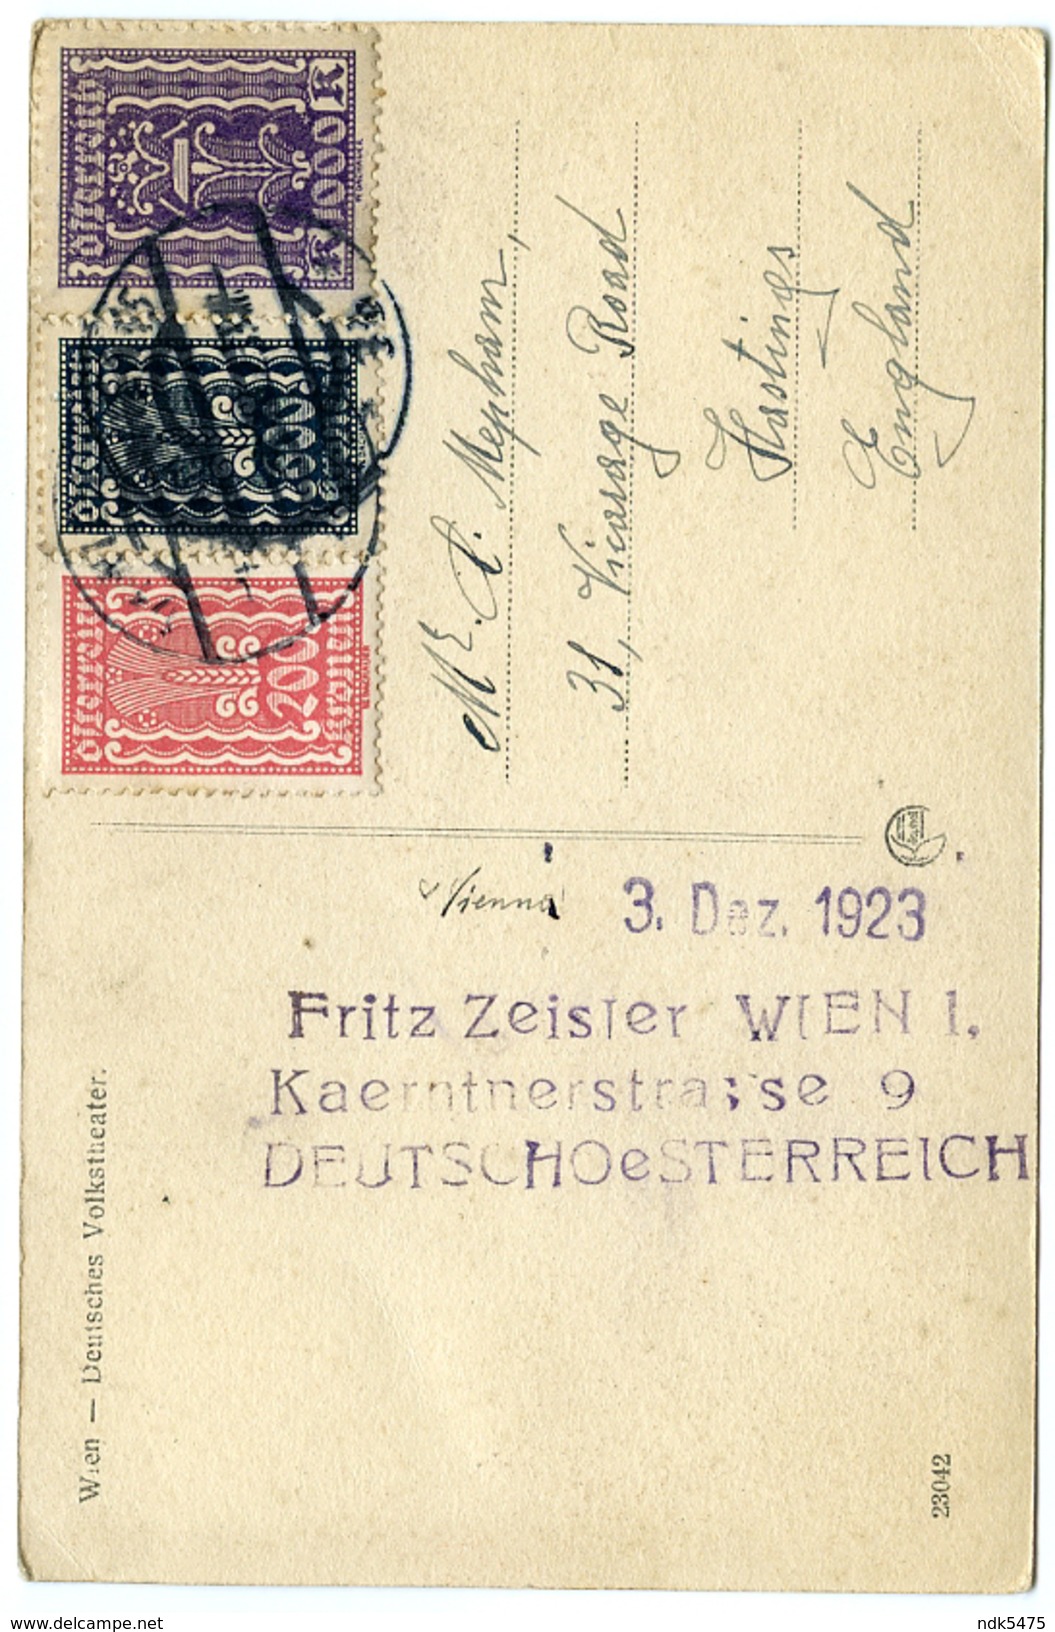 AUTRICHE : WIEN - DEUTSCHES VOLKSTHEATER / FRITZ ZEISLER - KAERNTNERSTRASSE (1923) / ADDRESS - HASTINGS, VICARAGE ROAD - Vienna Center